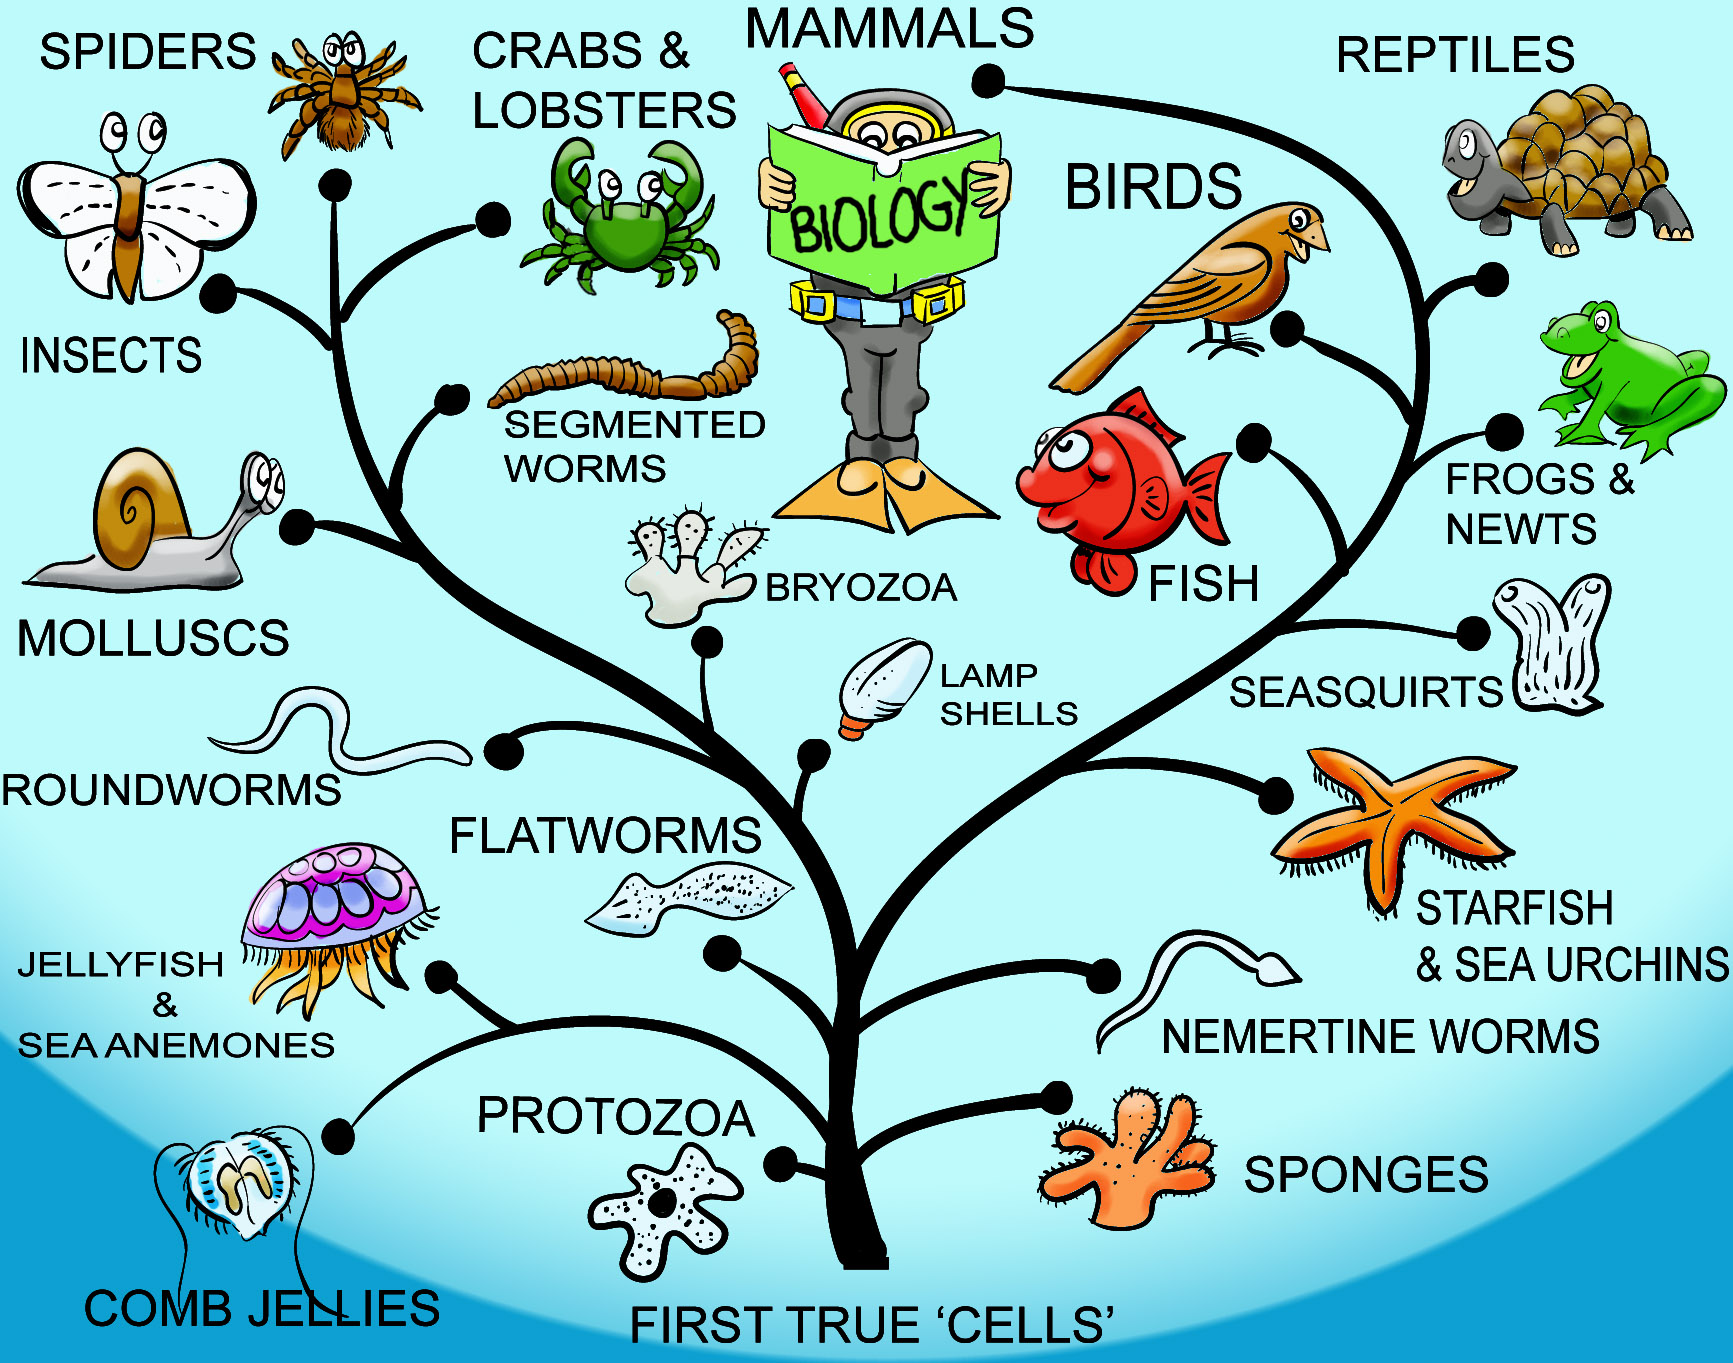 Örneklerle canlılarda evrimin izini sürmek: Morfoloji, genetik ve ortak ata ilişkisi